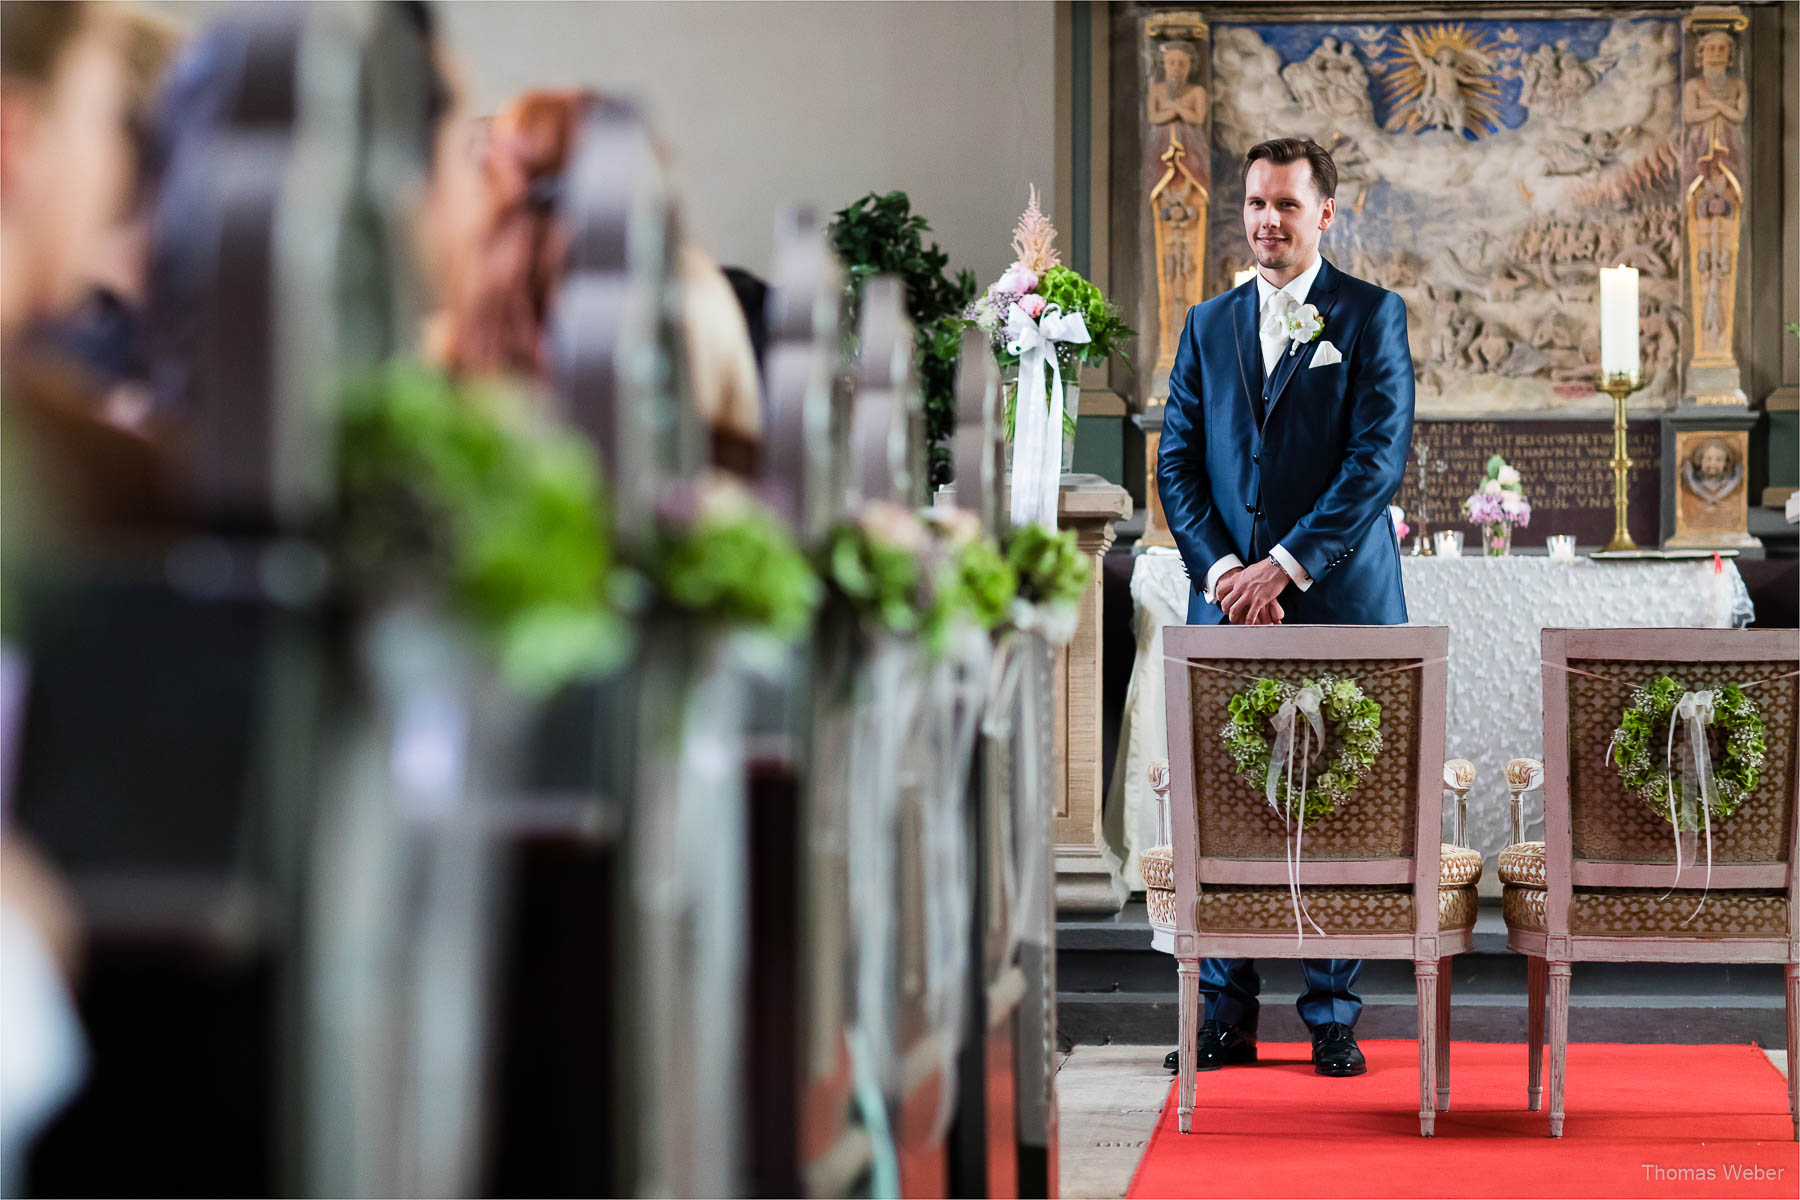 Hochzeit im Schlosshotel Münchhausen in Aerzen, Fotograf Thomas Weber aus Oldenburg